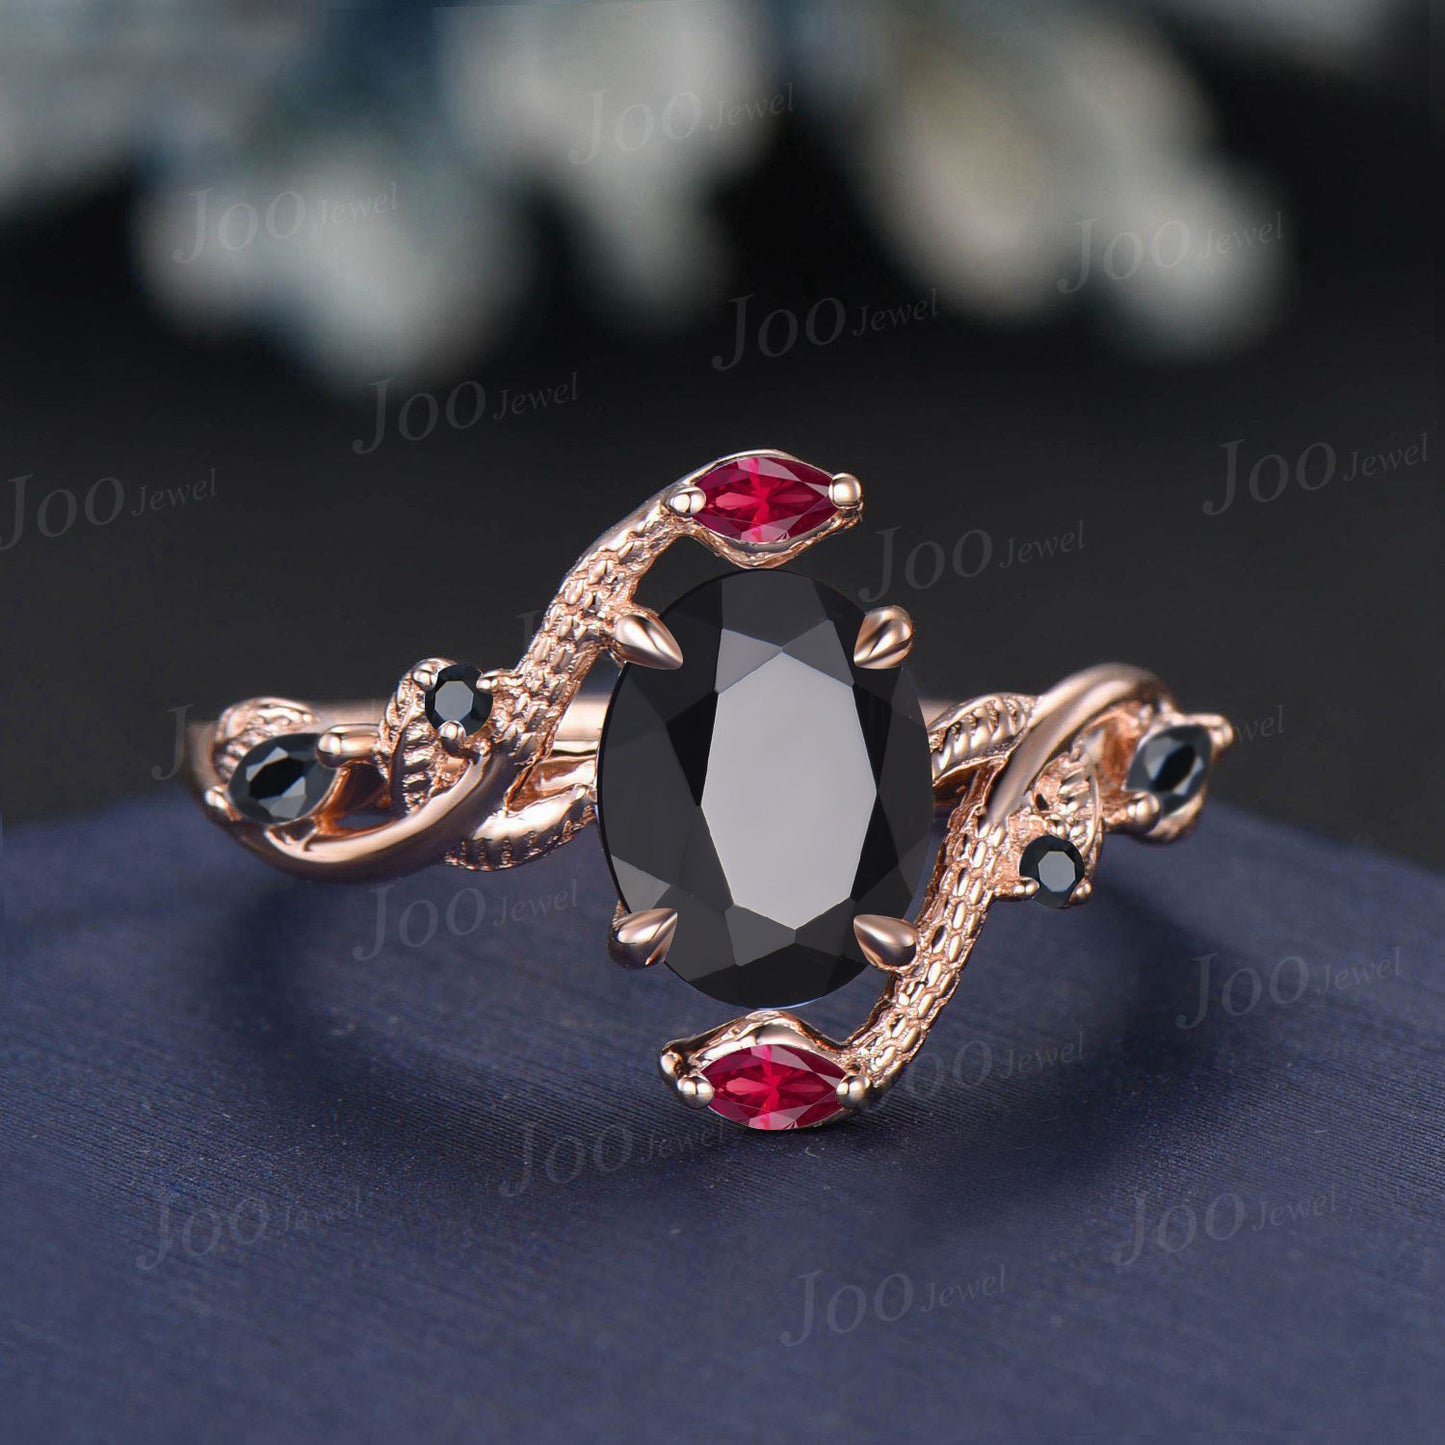 Unique Gothic Natural Black Onyx Garnet Snake Engagement Ring Vintage 14K Rose/Black Gold Nature Inspired Leaf Oval Wedding Ring for Women